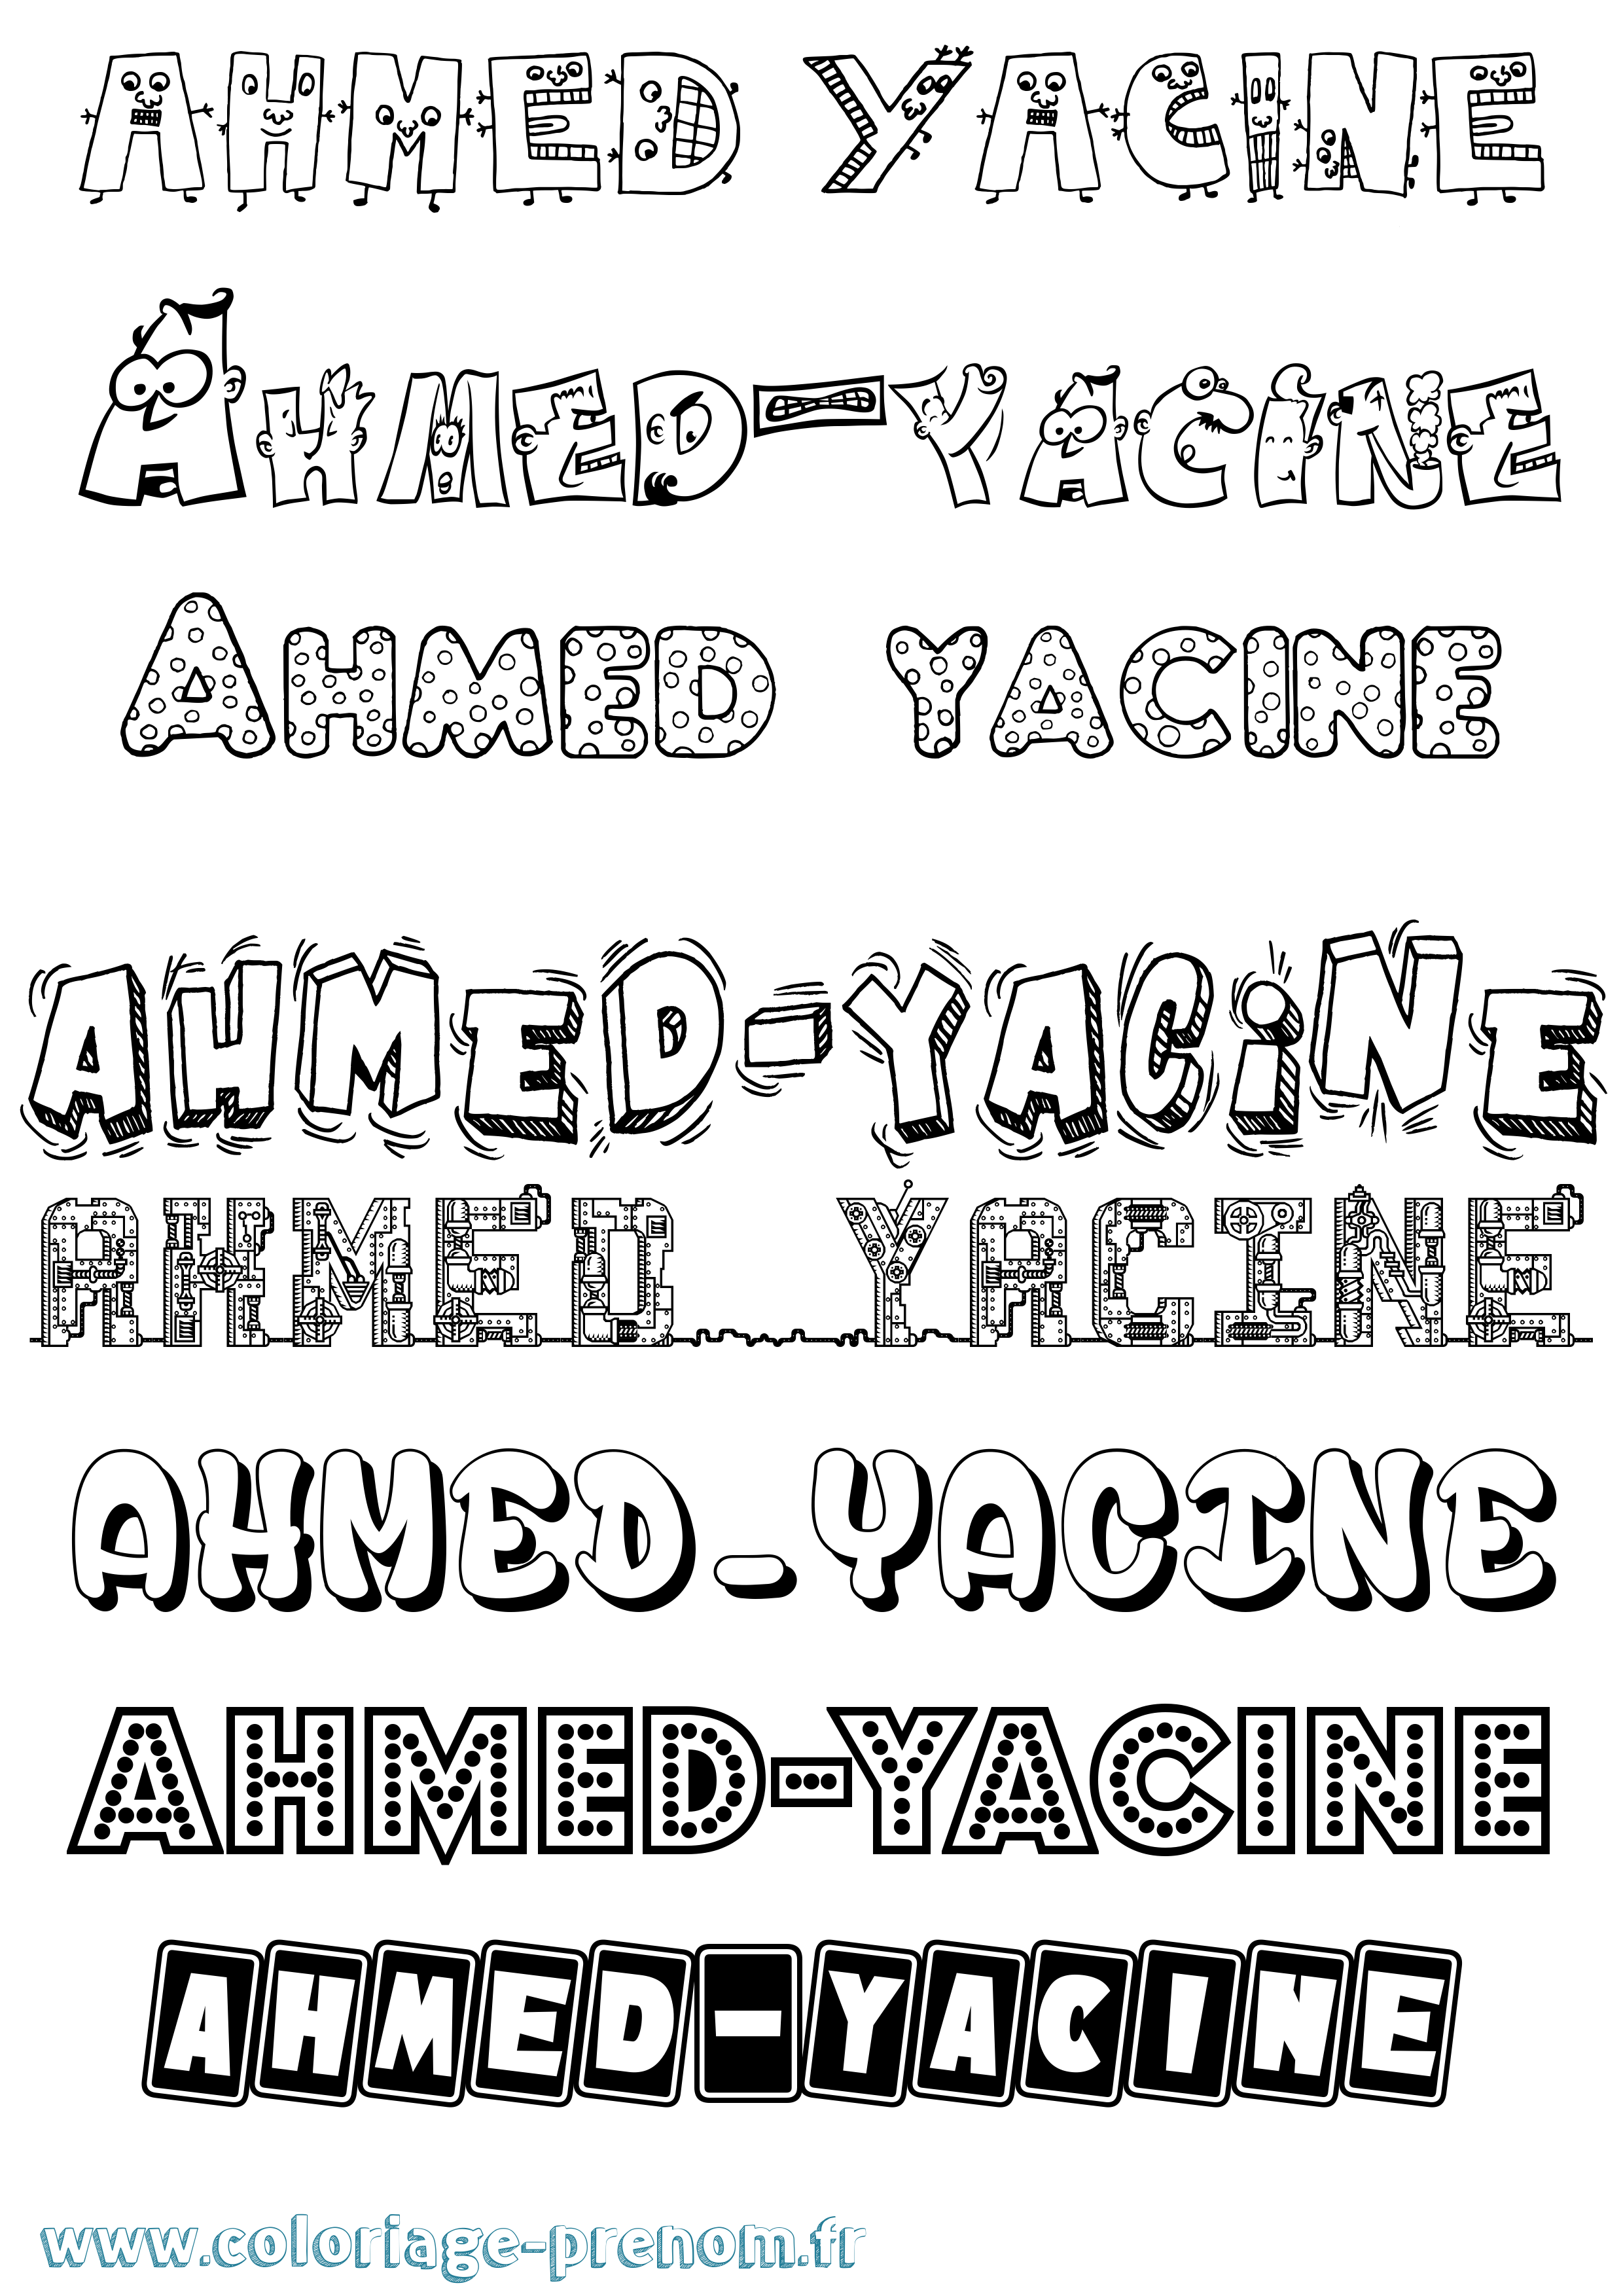 Coloriage prénom Ahmed-Yacine Fun